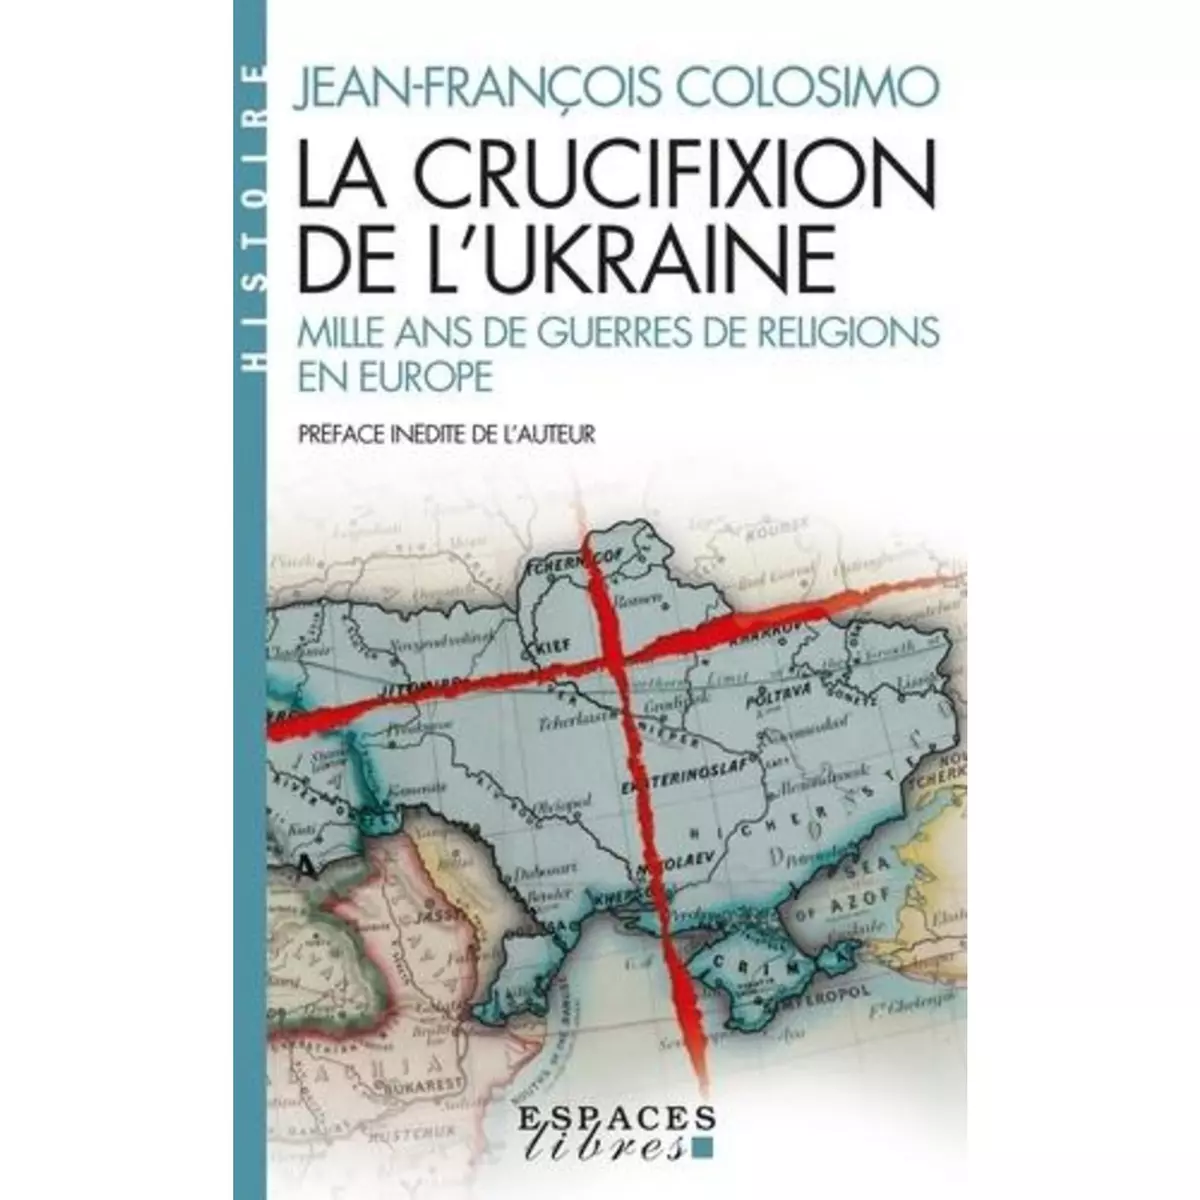  LA CRUCIFIXION DE L'UKRAINE. MILLE ANS DE GUERRES DE RELIGION EN EUROPE, Colosimo Jean-François